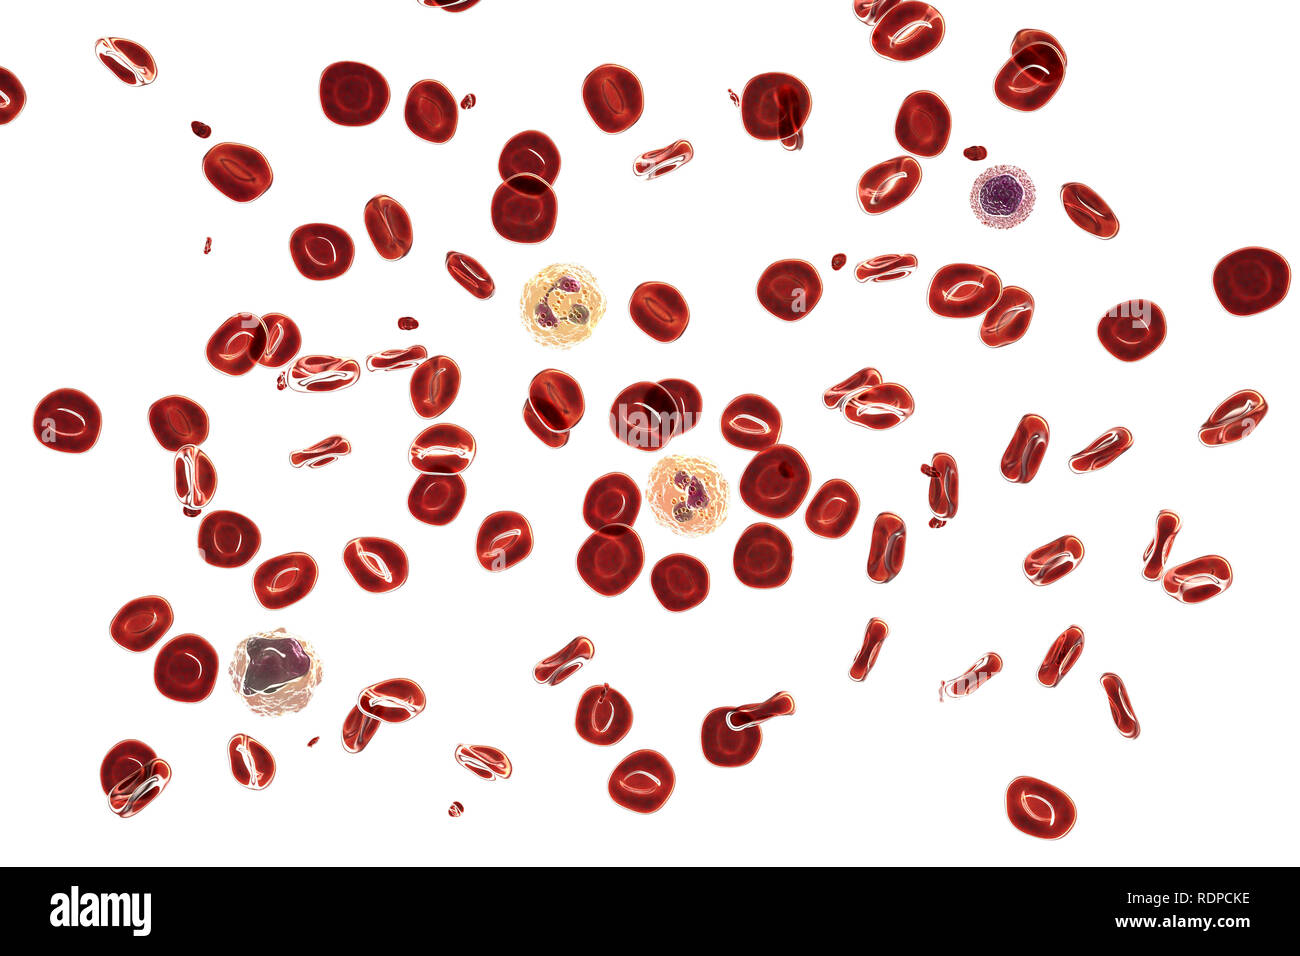 Frottis sanguin normal. Illustration de l'ordinateur, les globules rouges,  les plaquettes (petites particules rouges), les neutrophiles (un taux de globules  blancs dans le centre et l'autre - vers le bas à droite),